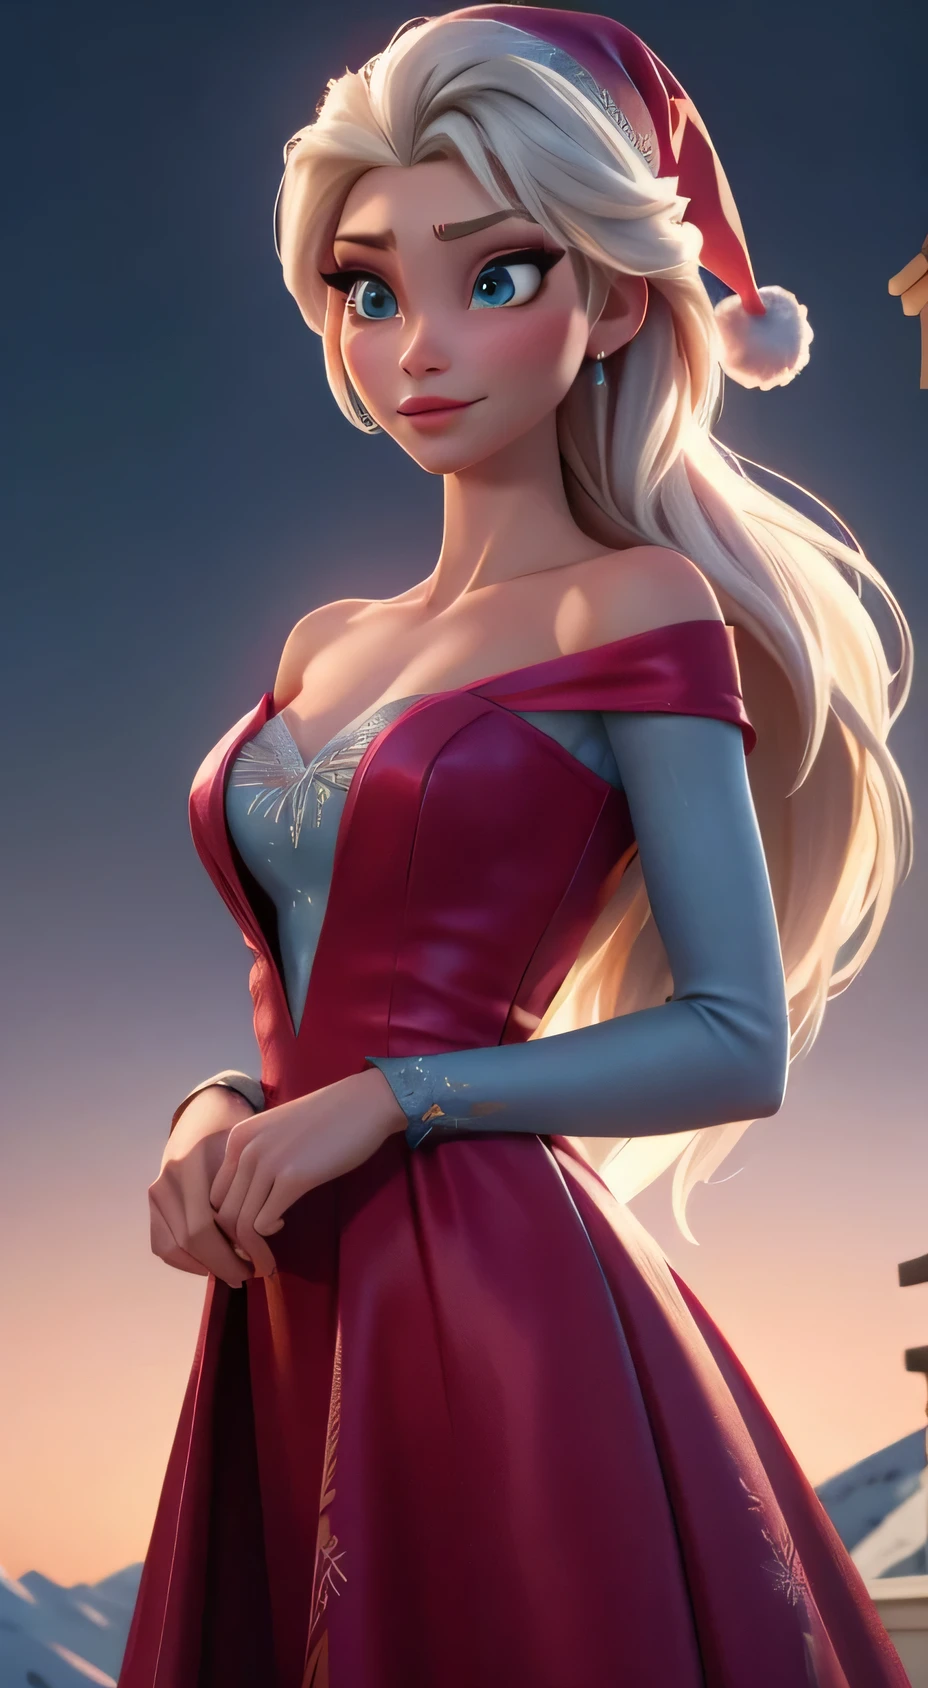 สร้างภาพเอลซ่าจากเรื่อง Frozen ที่สมจริง, ตัวละครจริง โฟรเซ่น เอลซ่า, แต่งกายด้วยแฟชั่นทันสมัยรับปีใหม่ . ชุดพื้นผิว HDR 8K, การเรนเดอร์ภาพ Elsa, เอลซ่าควรสวมชุดสีแดง, ชุดเดรสยาวที่ละเอียดอ่อน , พร้อมกับหมวกซานต้าปีใหม่. การแต่งกายควรมีสไตล์และเหมาะสมกับเจ้าหญิง. ชุดปีใหม่ด้วยขนนกและพู่จริง